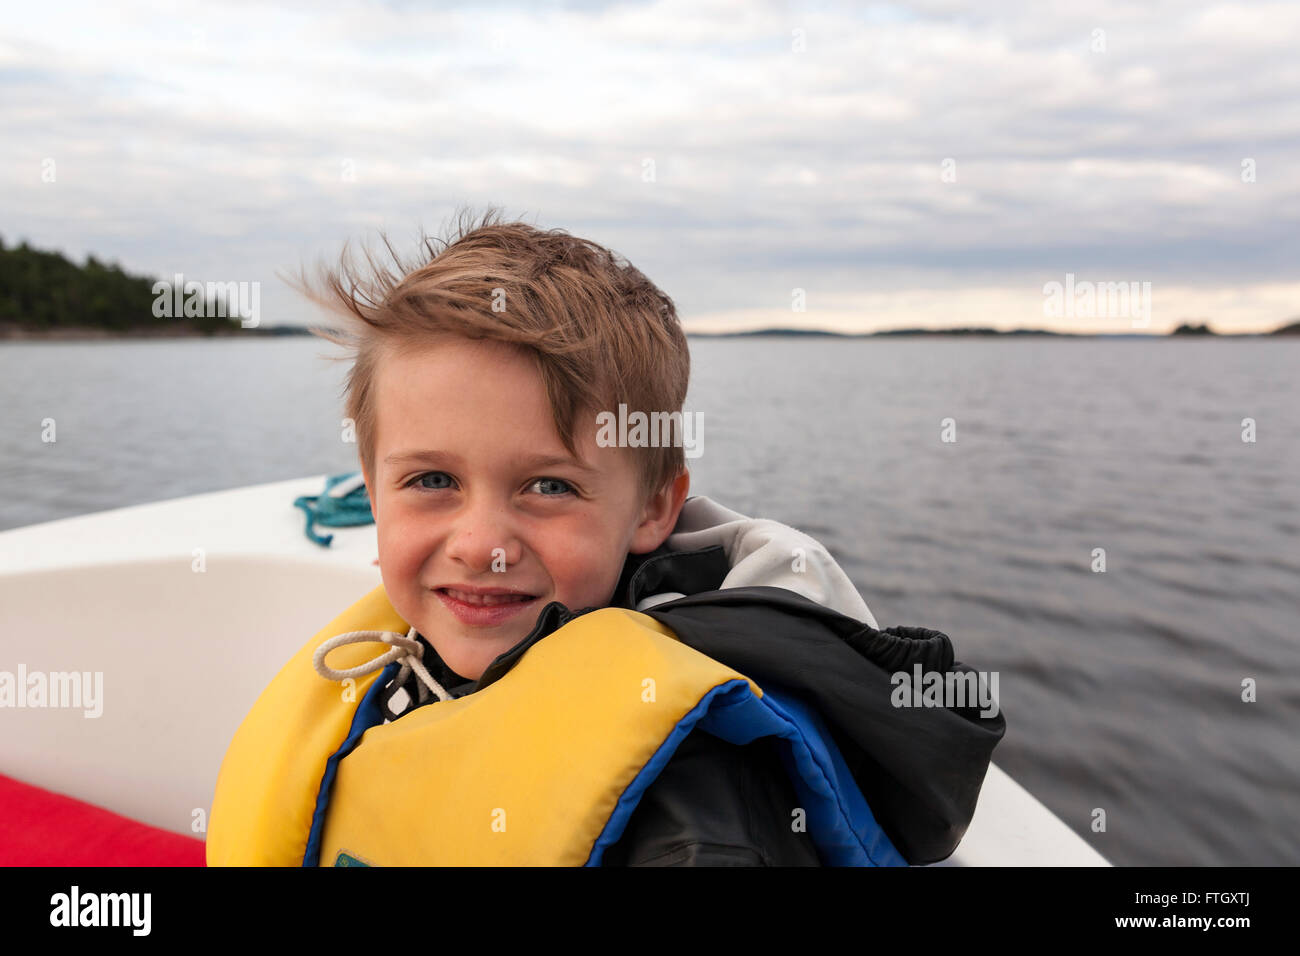 Junge Junge das Tragen einer Schwimmweste an der Vorderseite von einem Motorboot am Meer bei camera Model Release: Ja. Property Release: Nein. Stockfoto